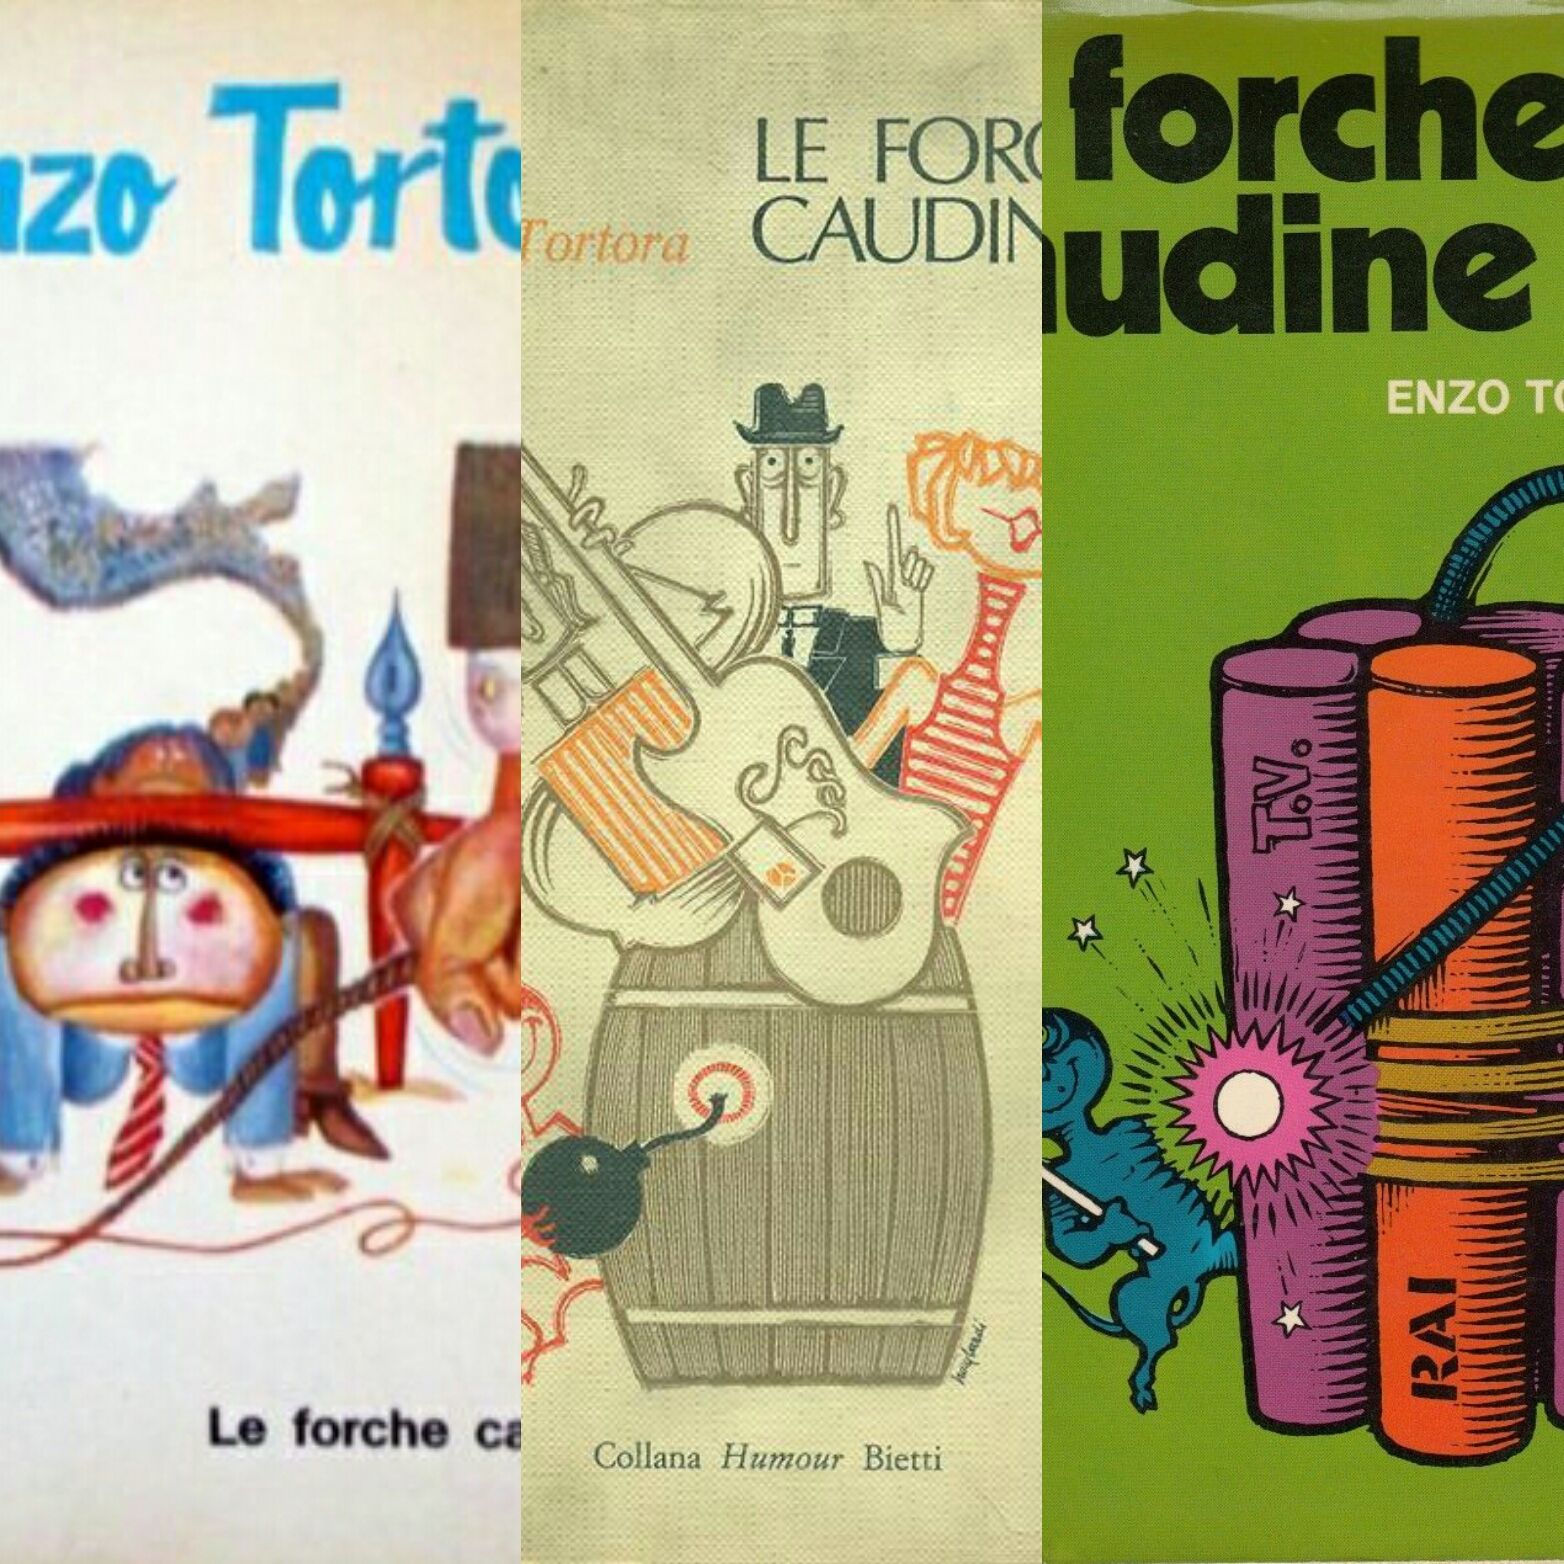 “Le forche caudine” di Enzo Tortora. Ci sono 3 prime edizioni?